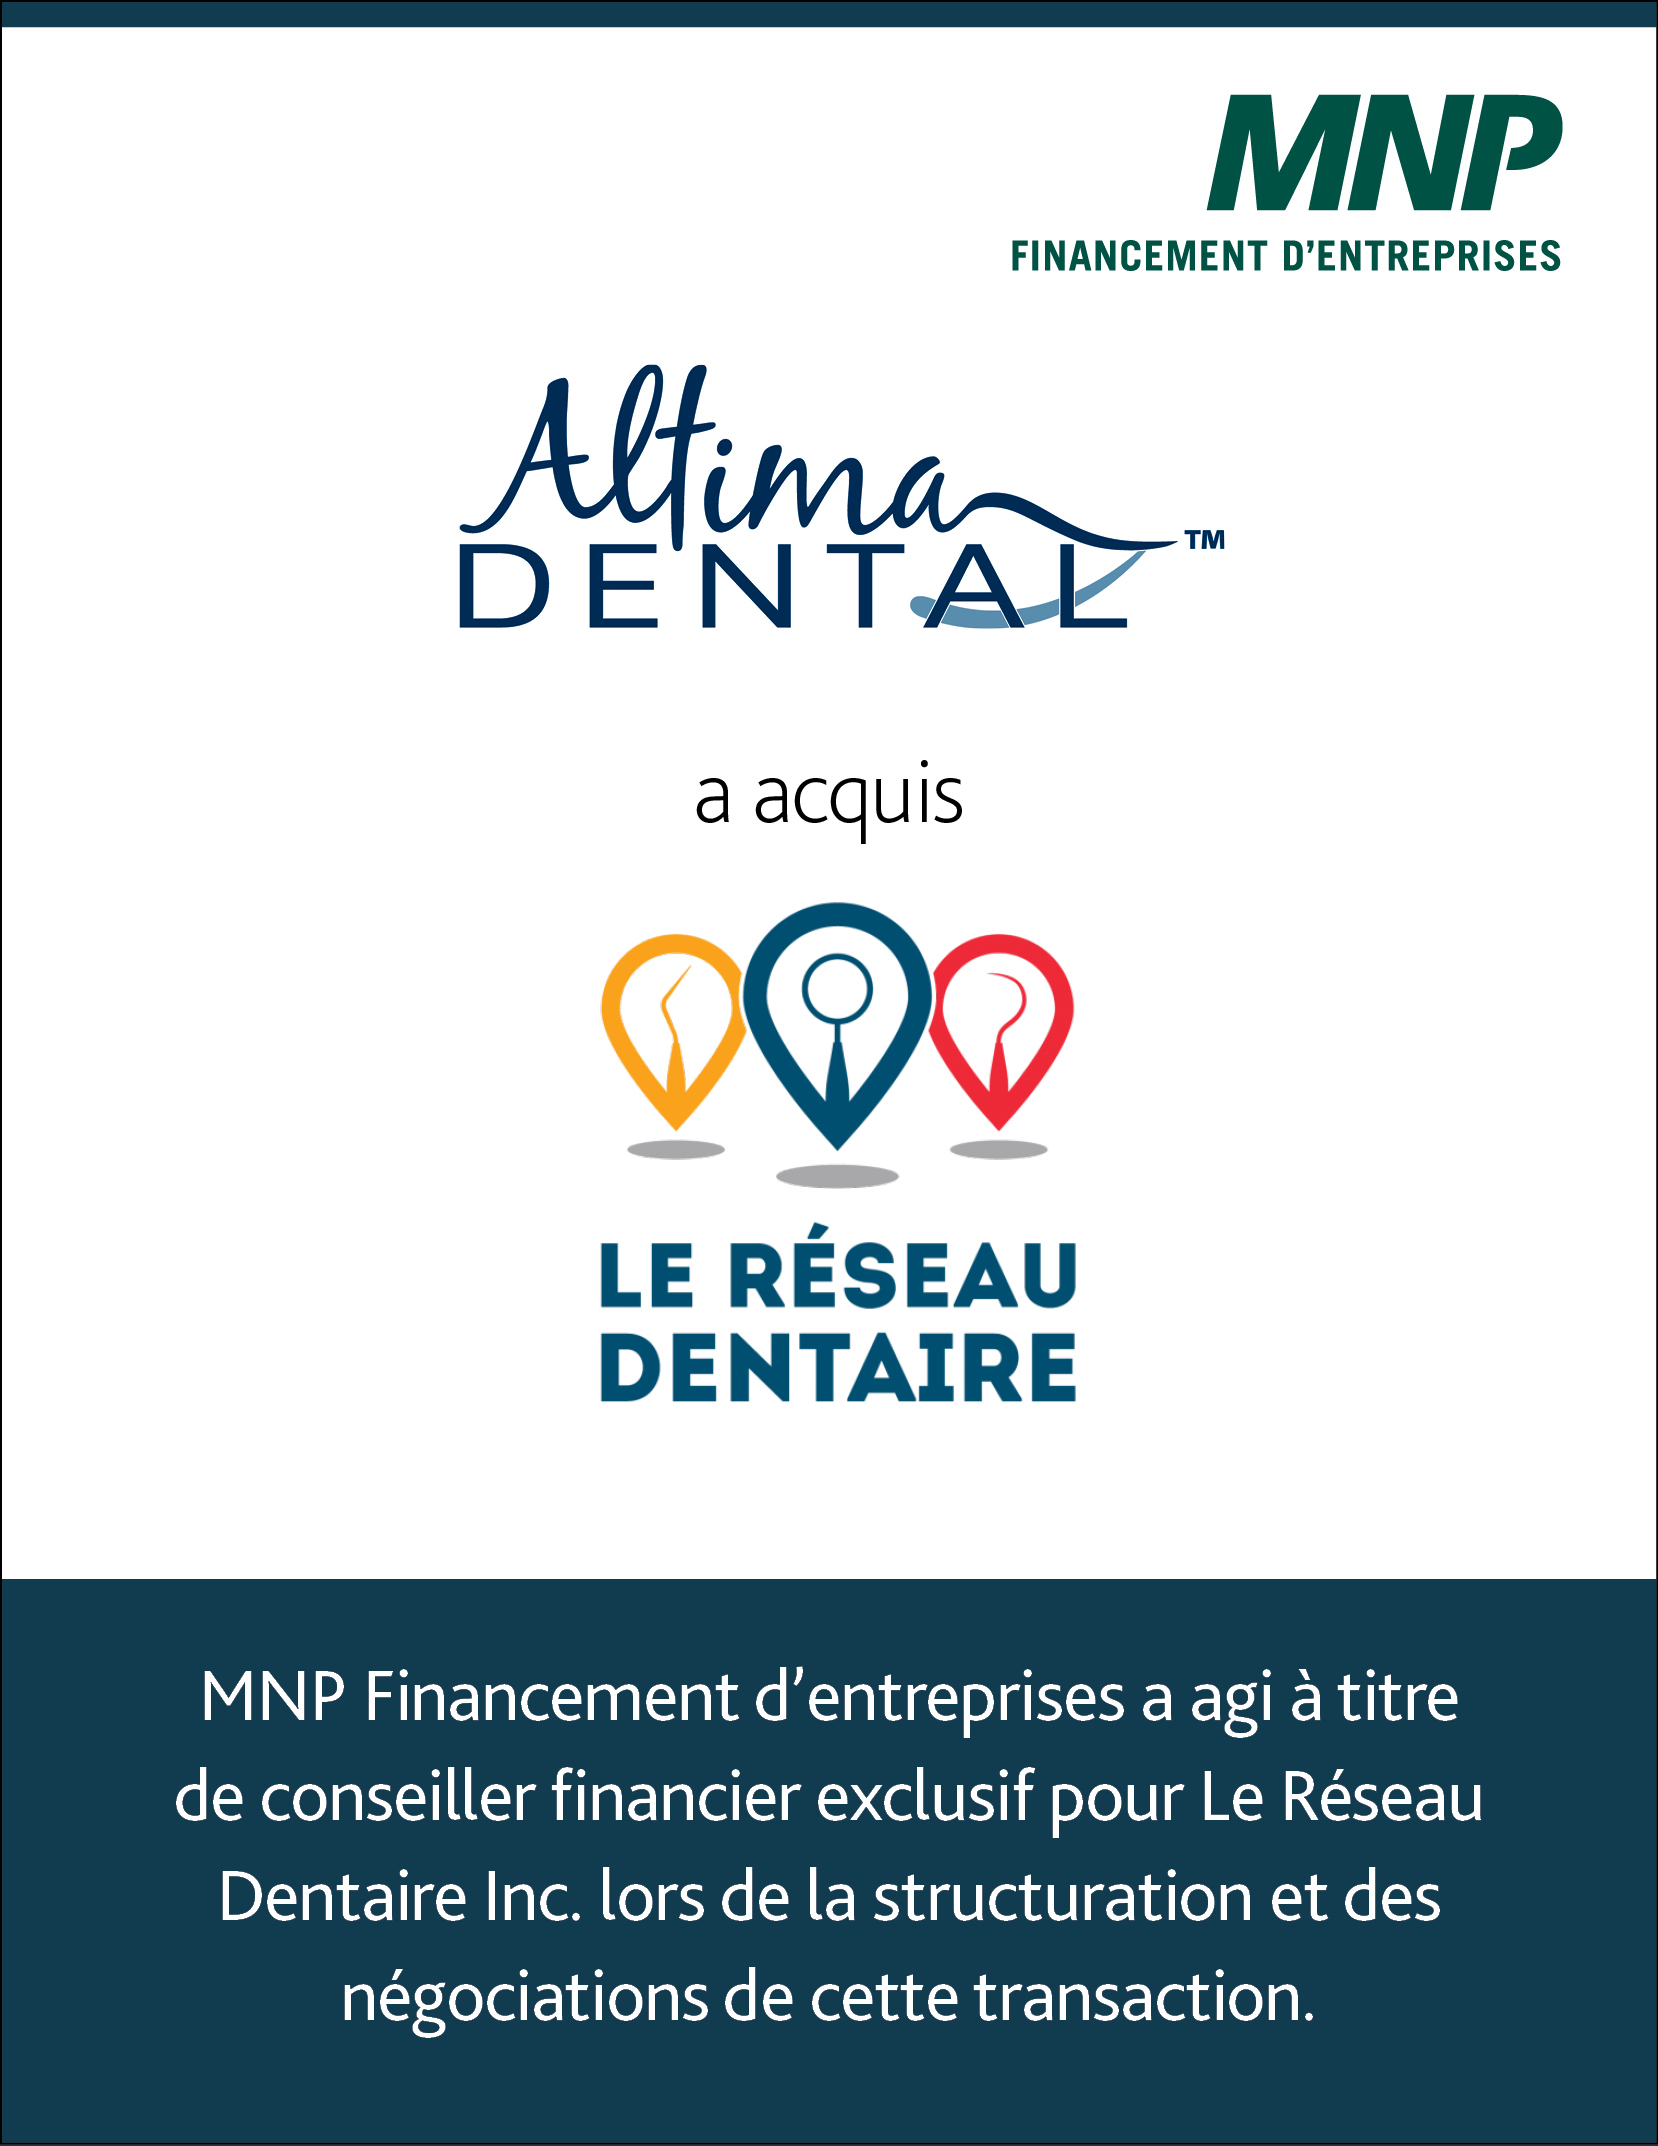 Altima Dental Centers Inc. a acquis Le Réseau Dentaire Inc.